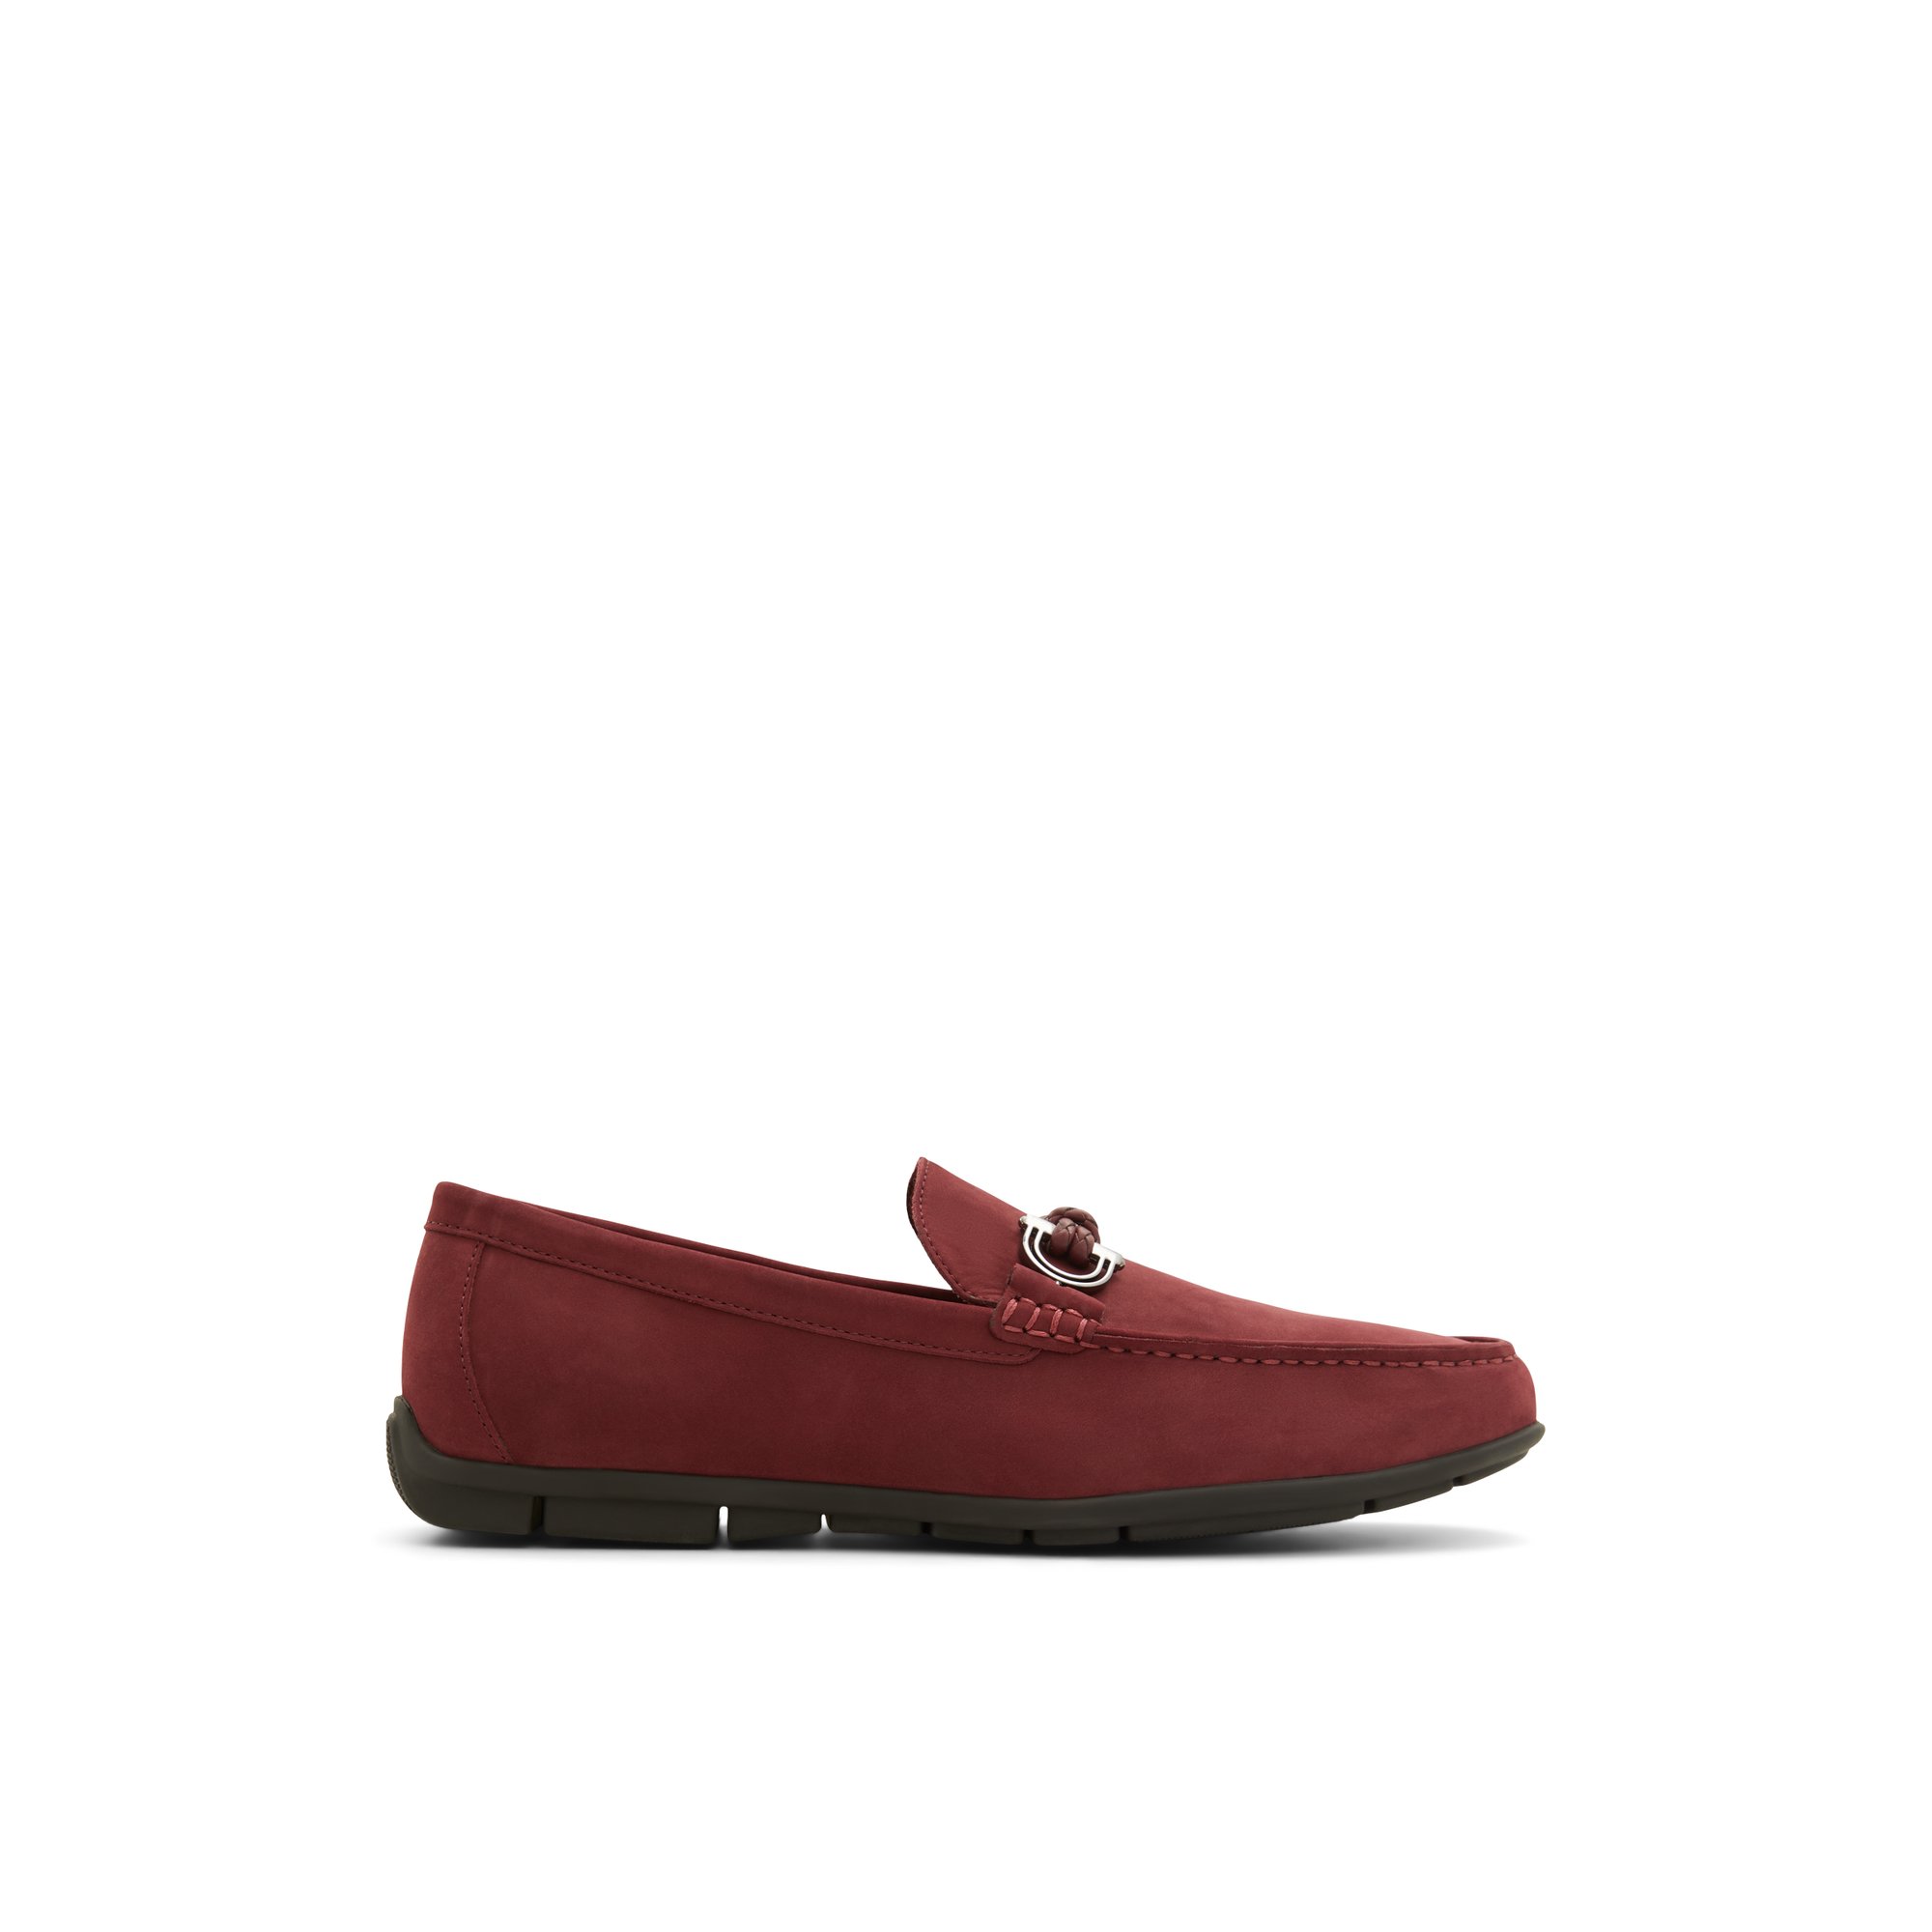 ALDO Leangelo - Men's Casual Shoe - Red